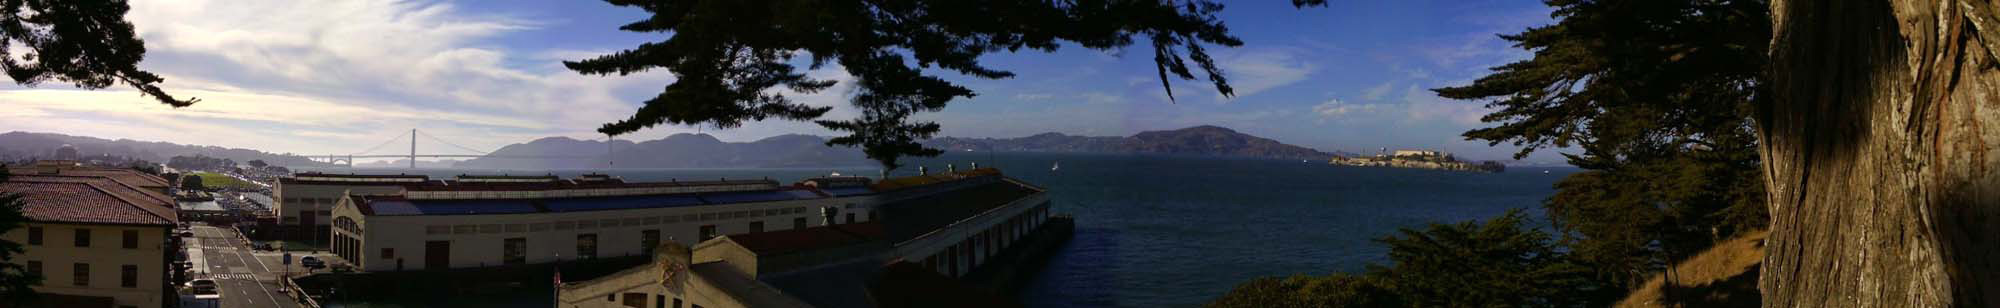 USA, Kalifornie, California, San Francisko, San Francisco, Golden Gate Bridge, Alcatraz